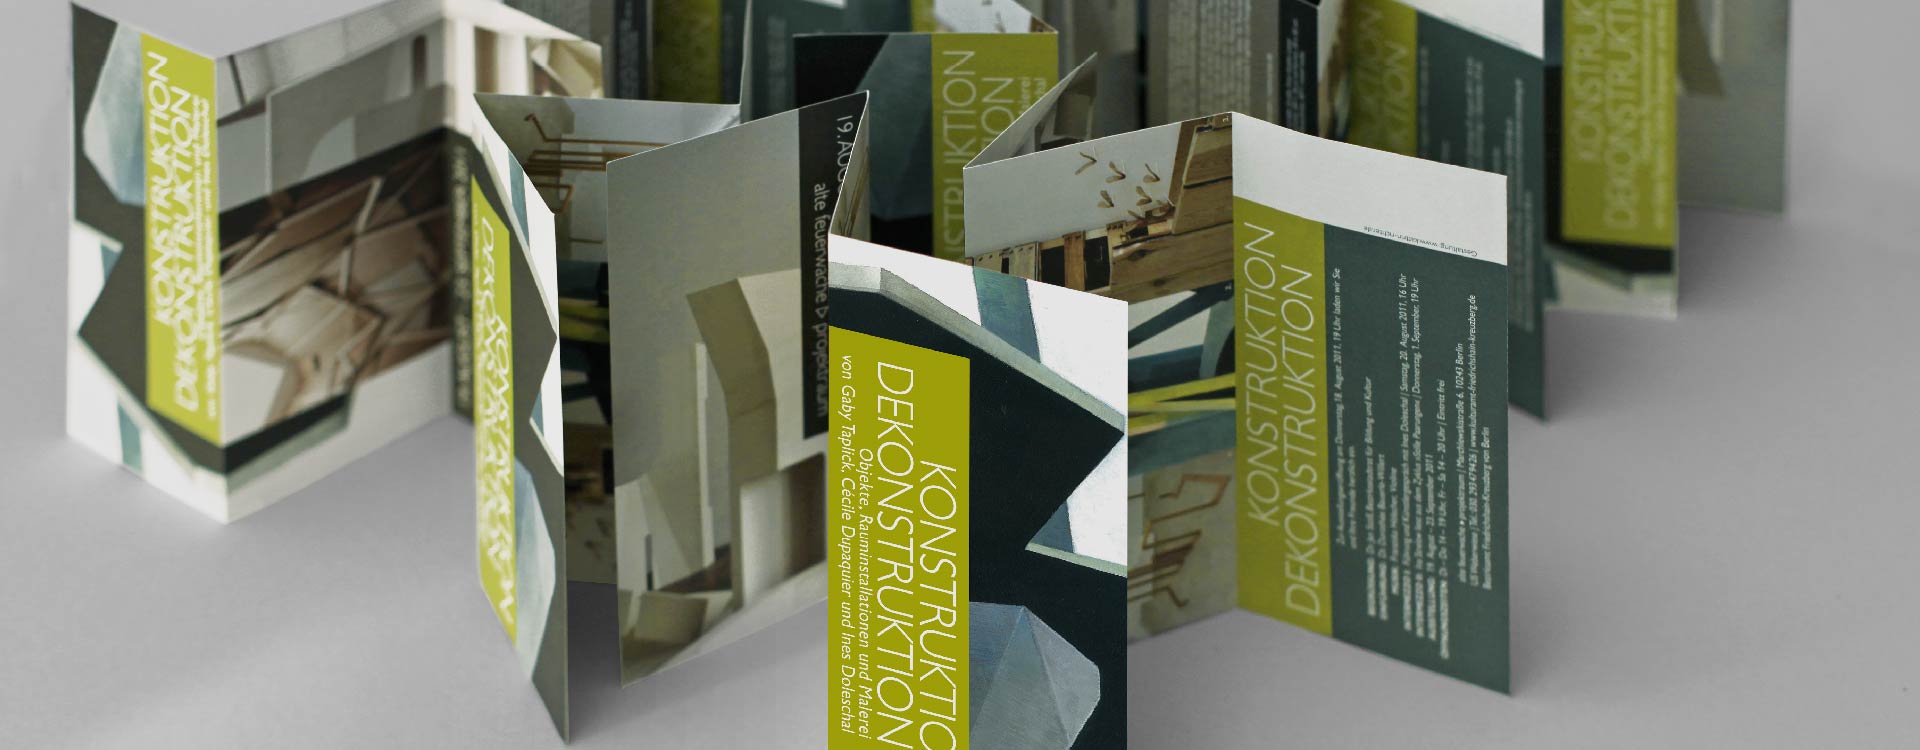 Faltblatt zur Ausstellung „Konstruktion Dekonstruktion“ im Projektraum Alte Feuerwache, Berlin; Design: Kattrin Richter | Büro für Grafikdesign